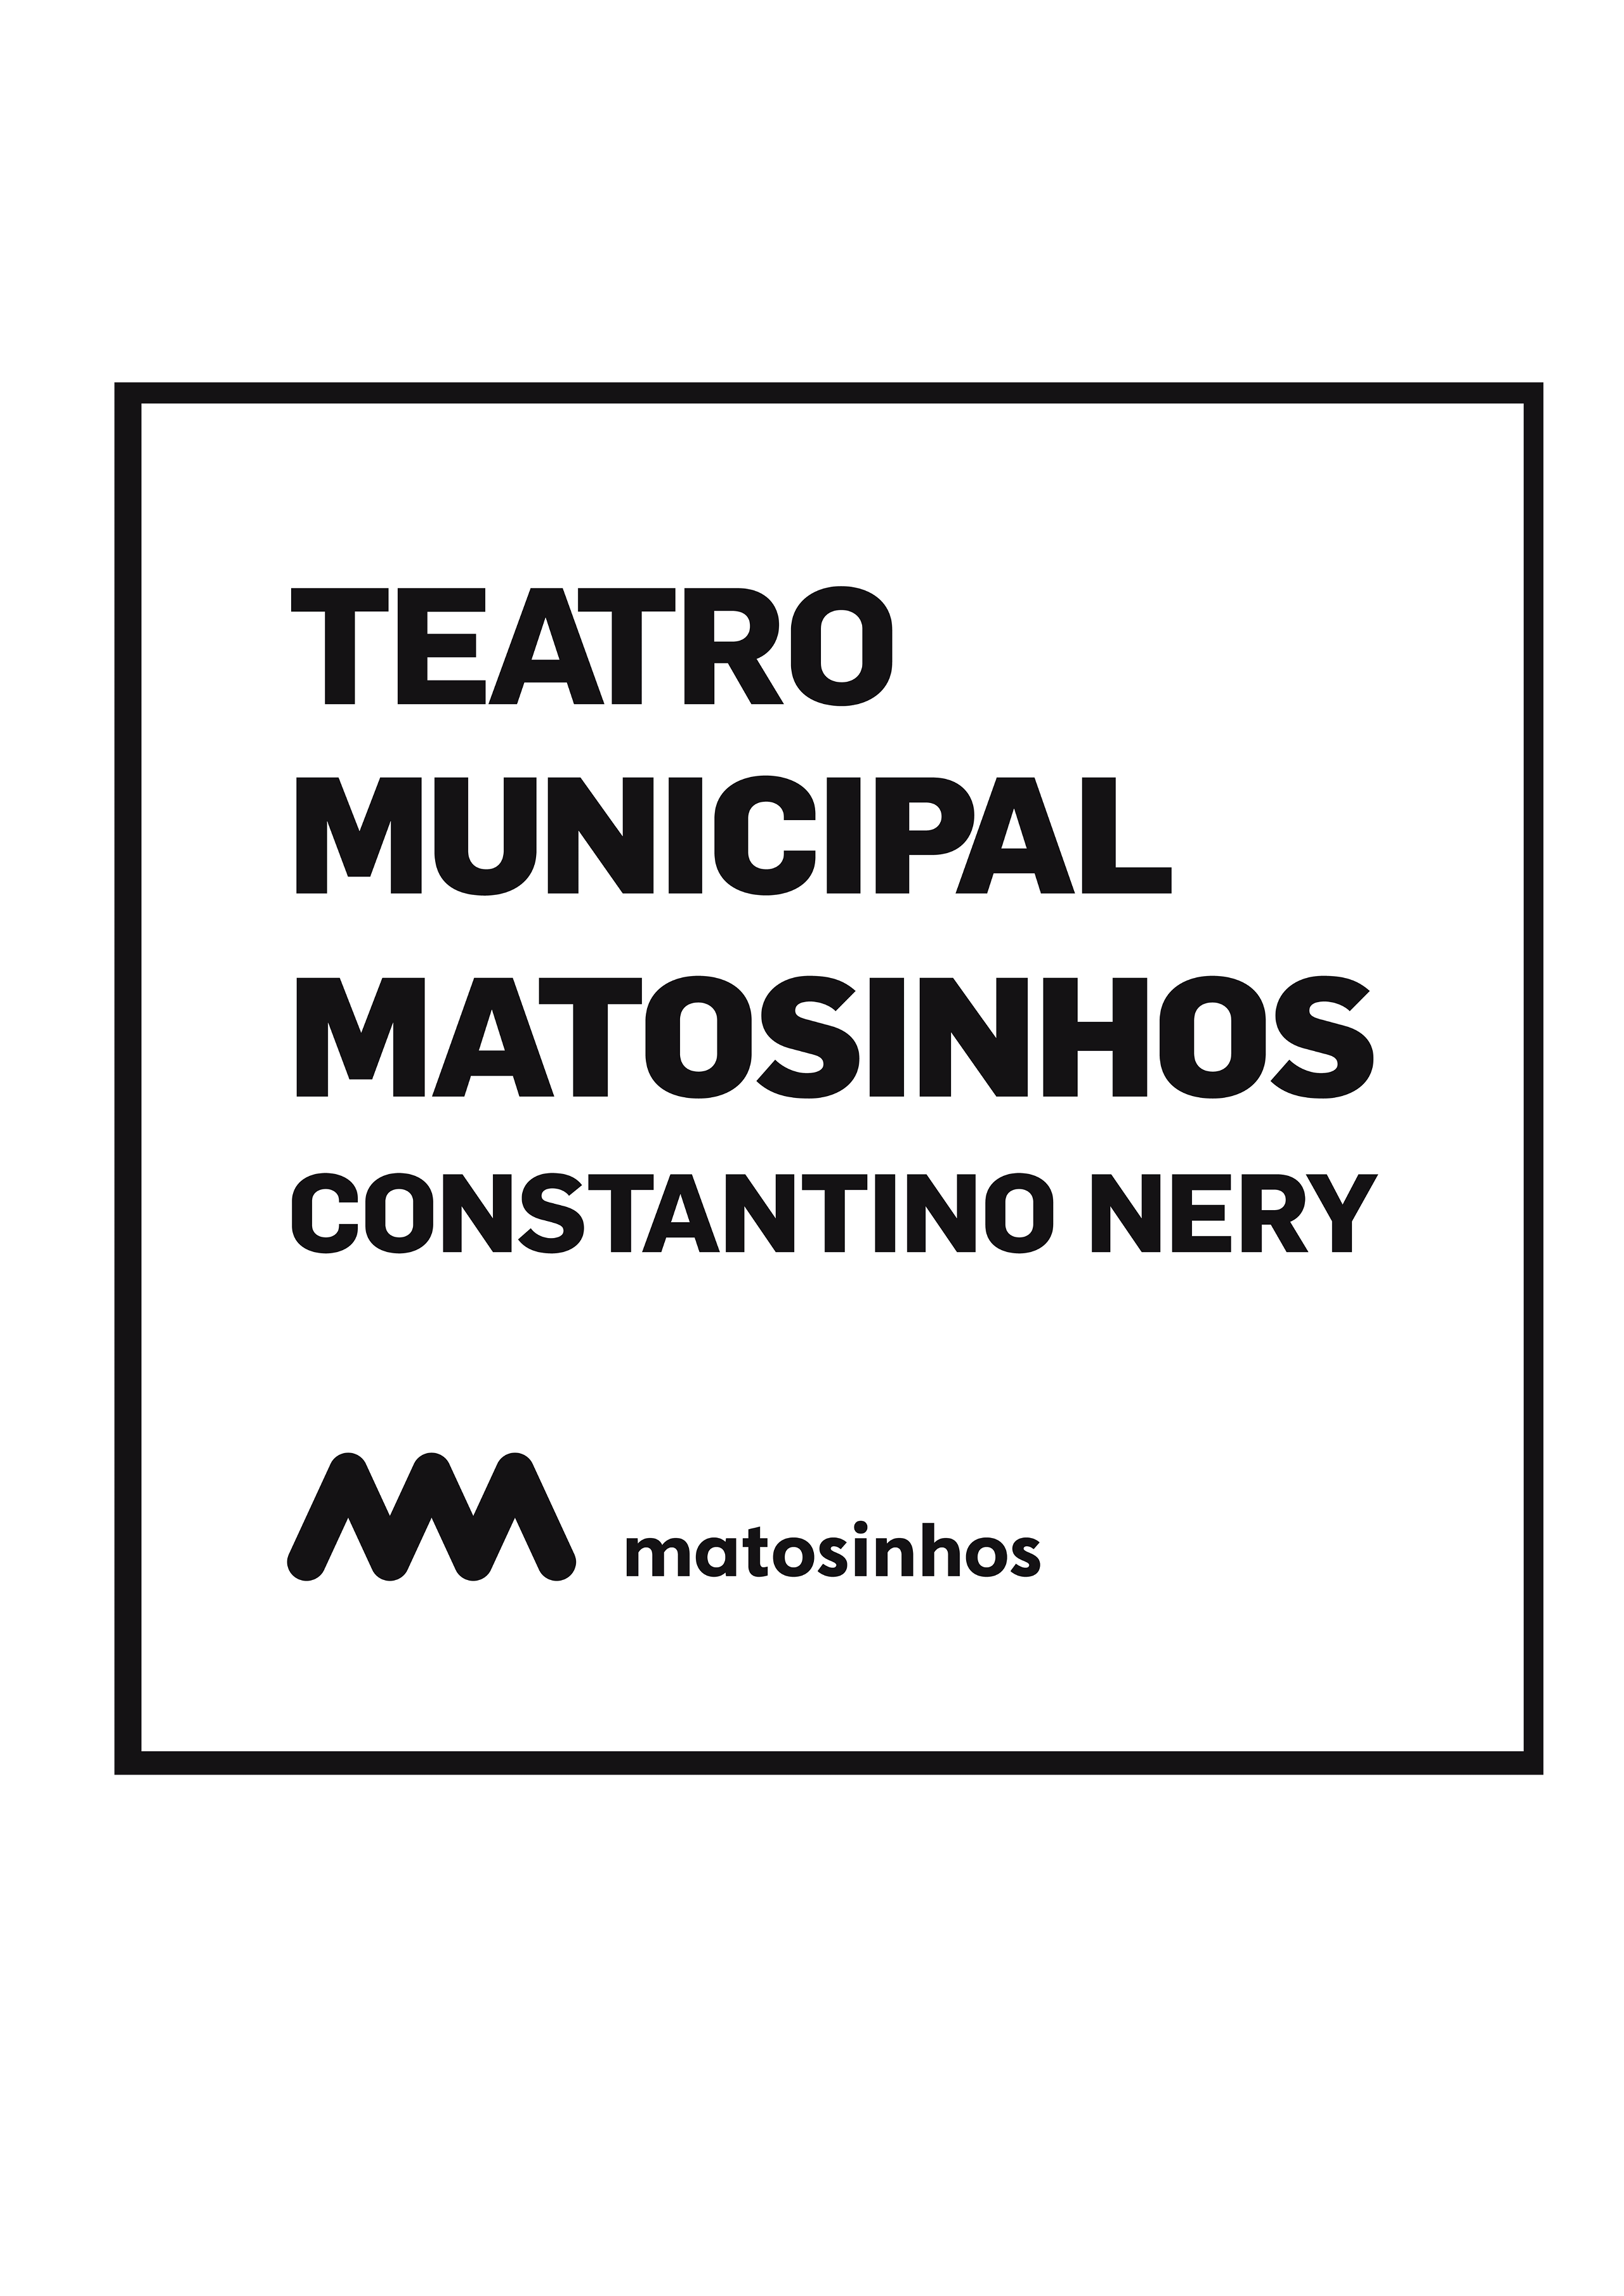 Teatro Municipal de Matosinhos Constantino Nery